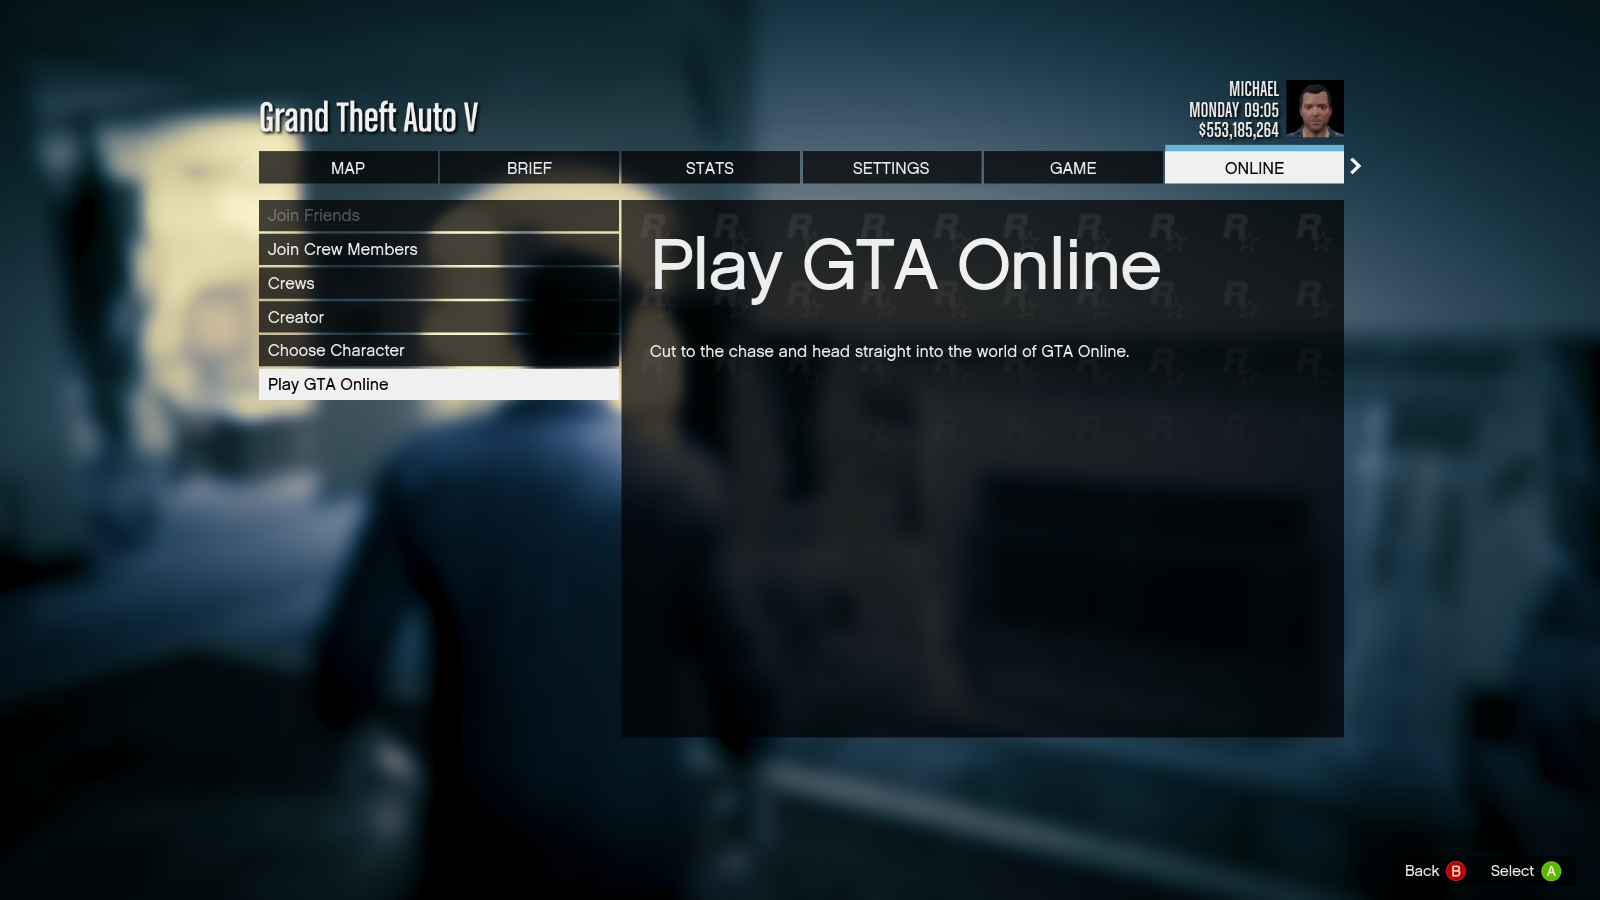 Choose “Play GTA Online”